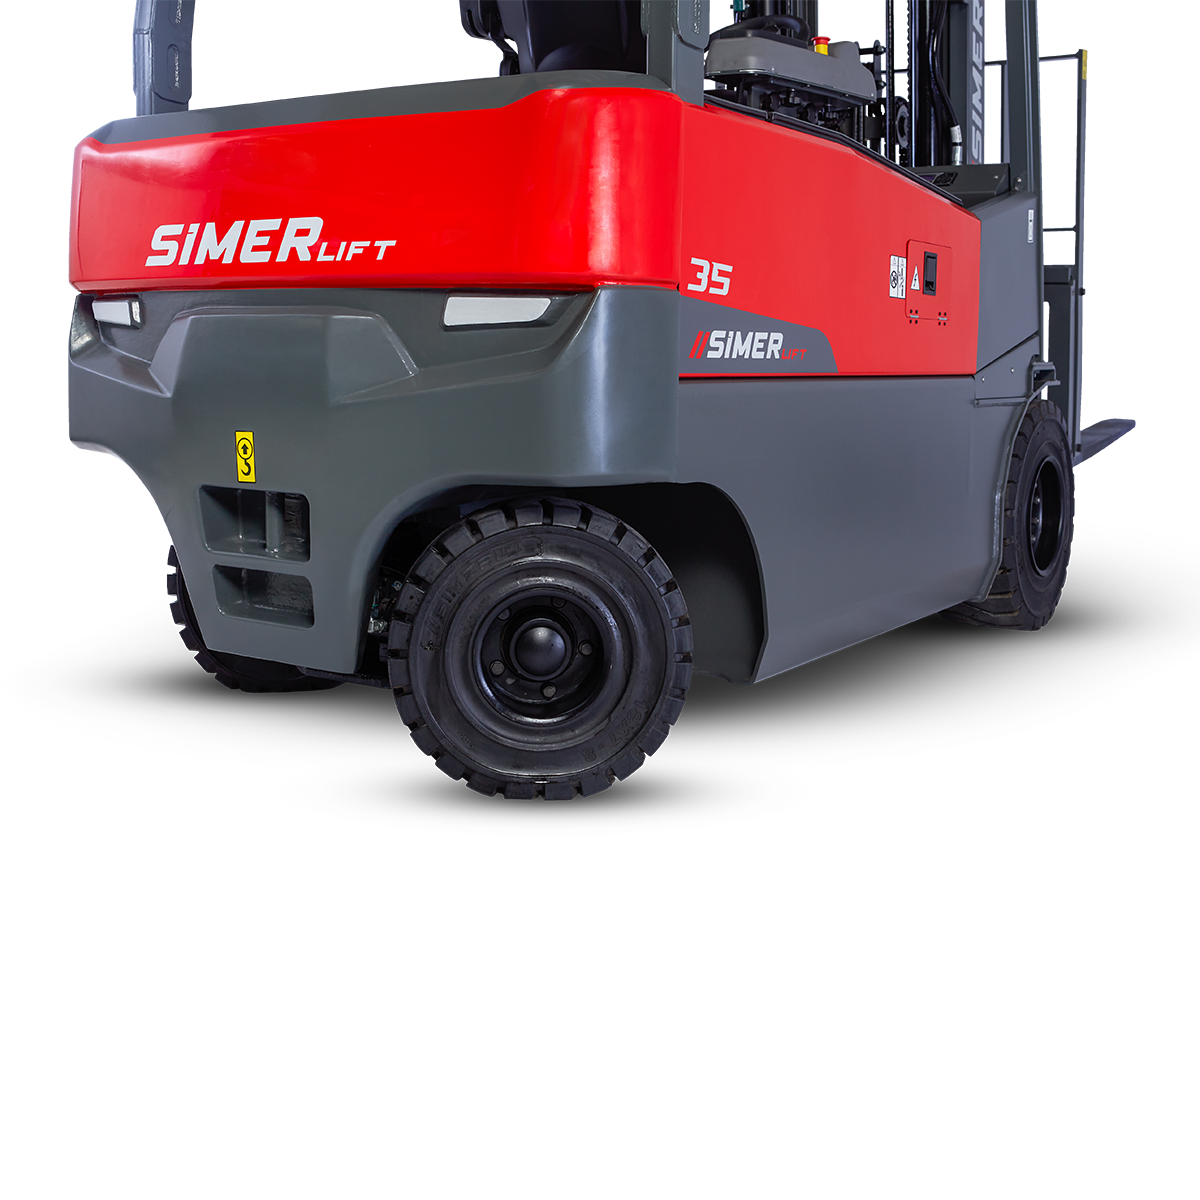 Simer Forklift 35T-4W